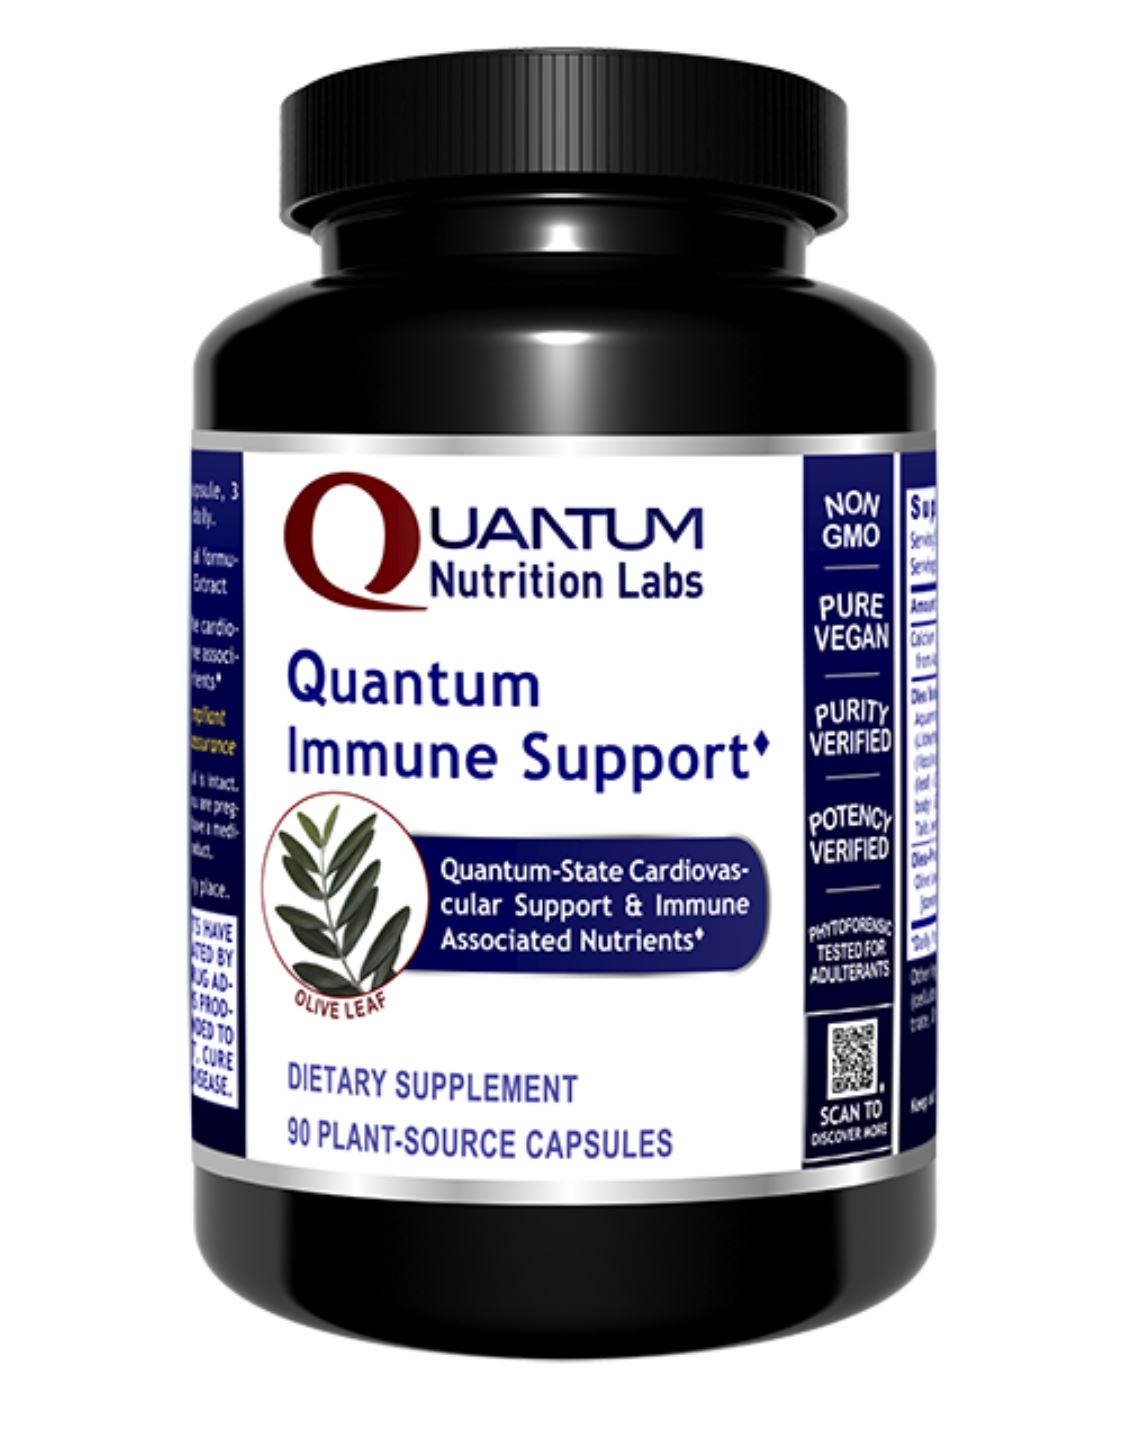 Quantum Immune Support Review